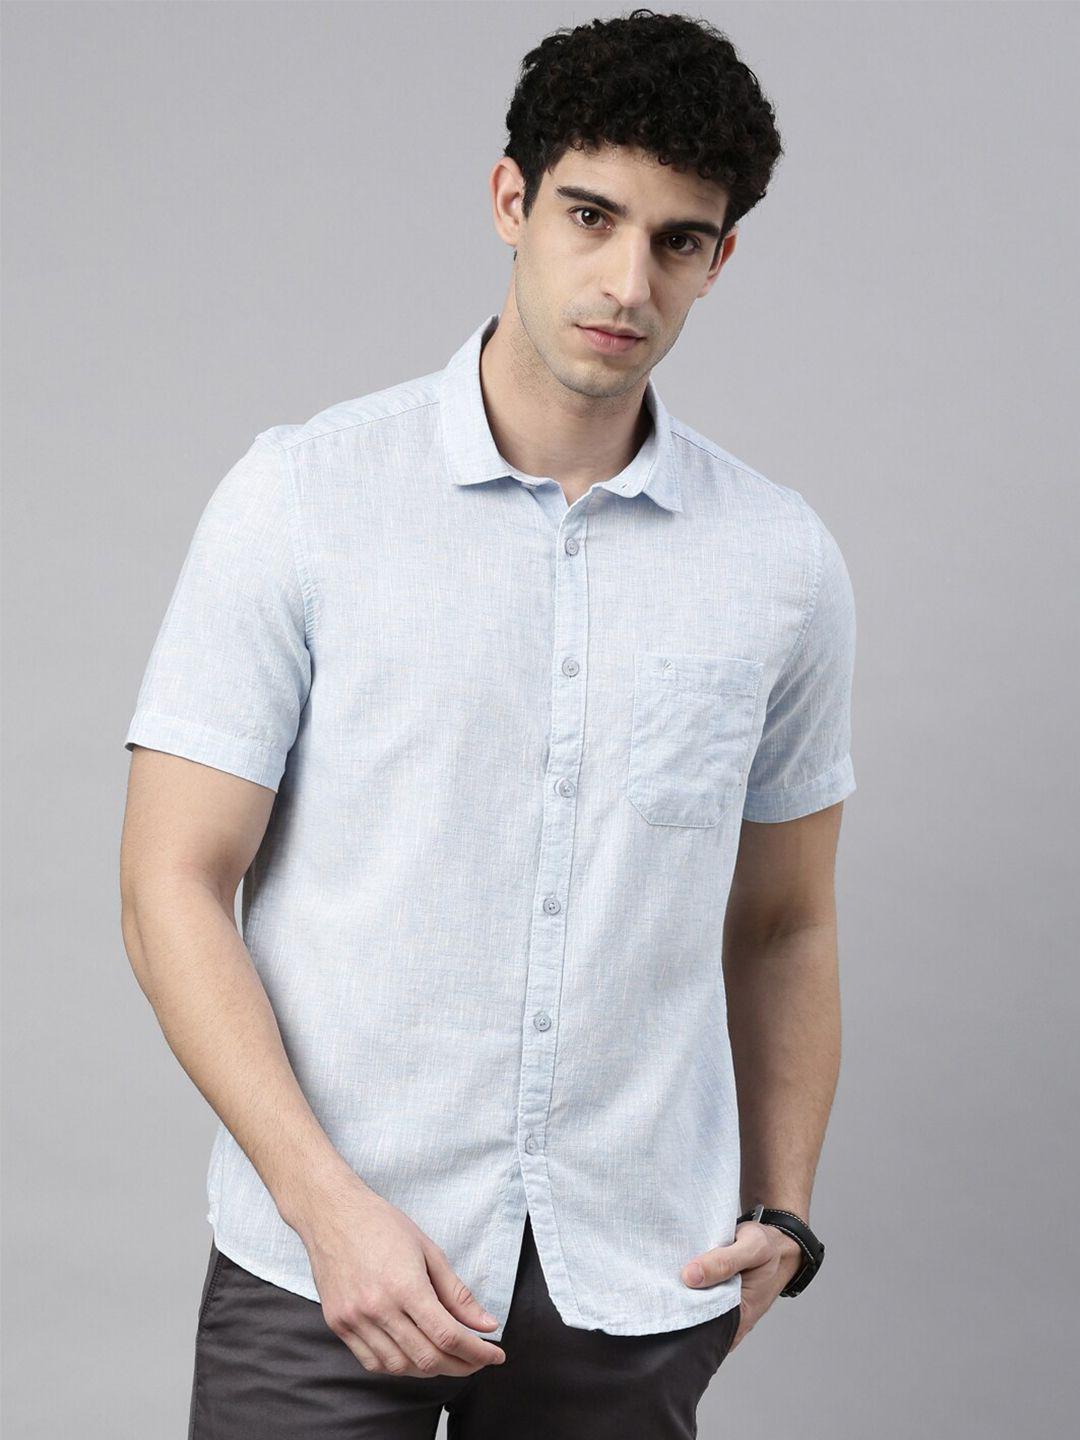 chennis men's 100% cotton slim fit spread collar shirt